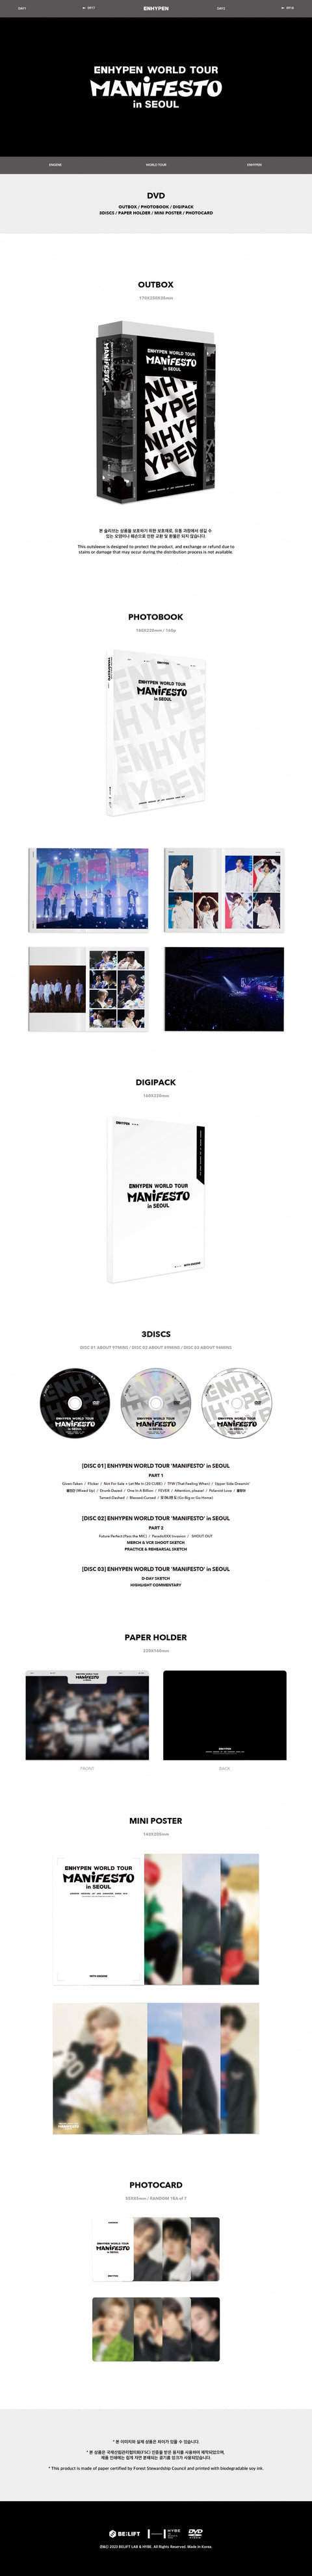 ENHYPEN - ENHYPEN WORLD TOUR [MANIFESTO] in SEOUL DVD